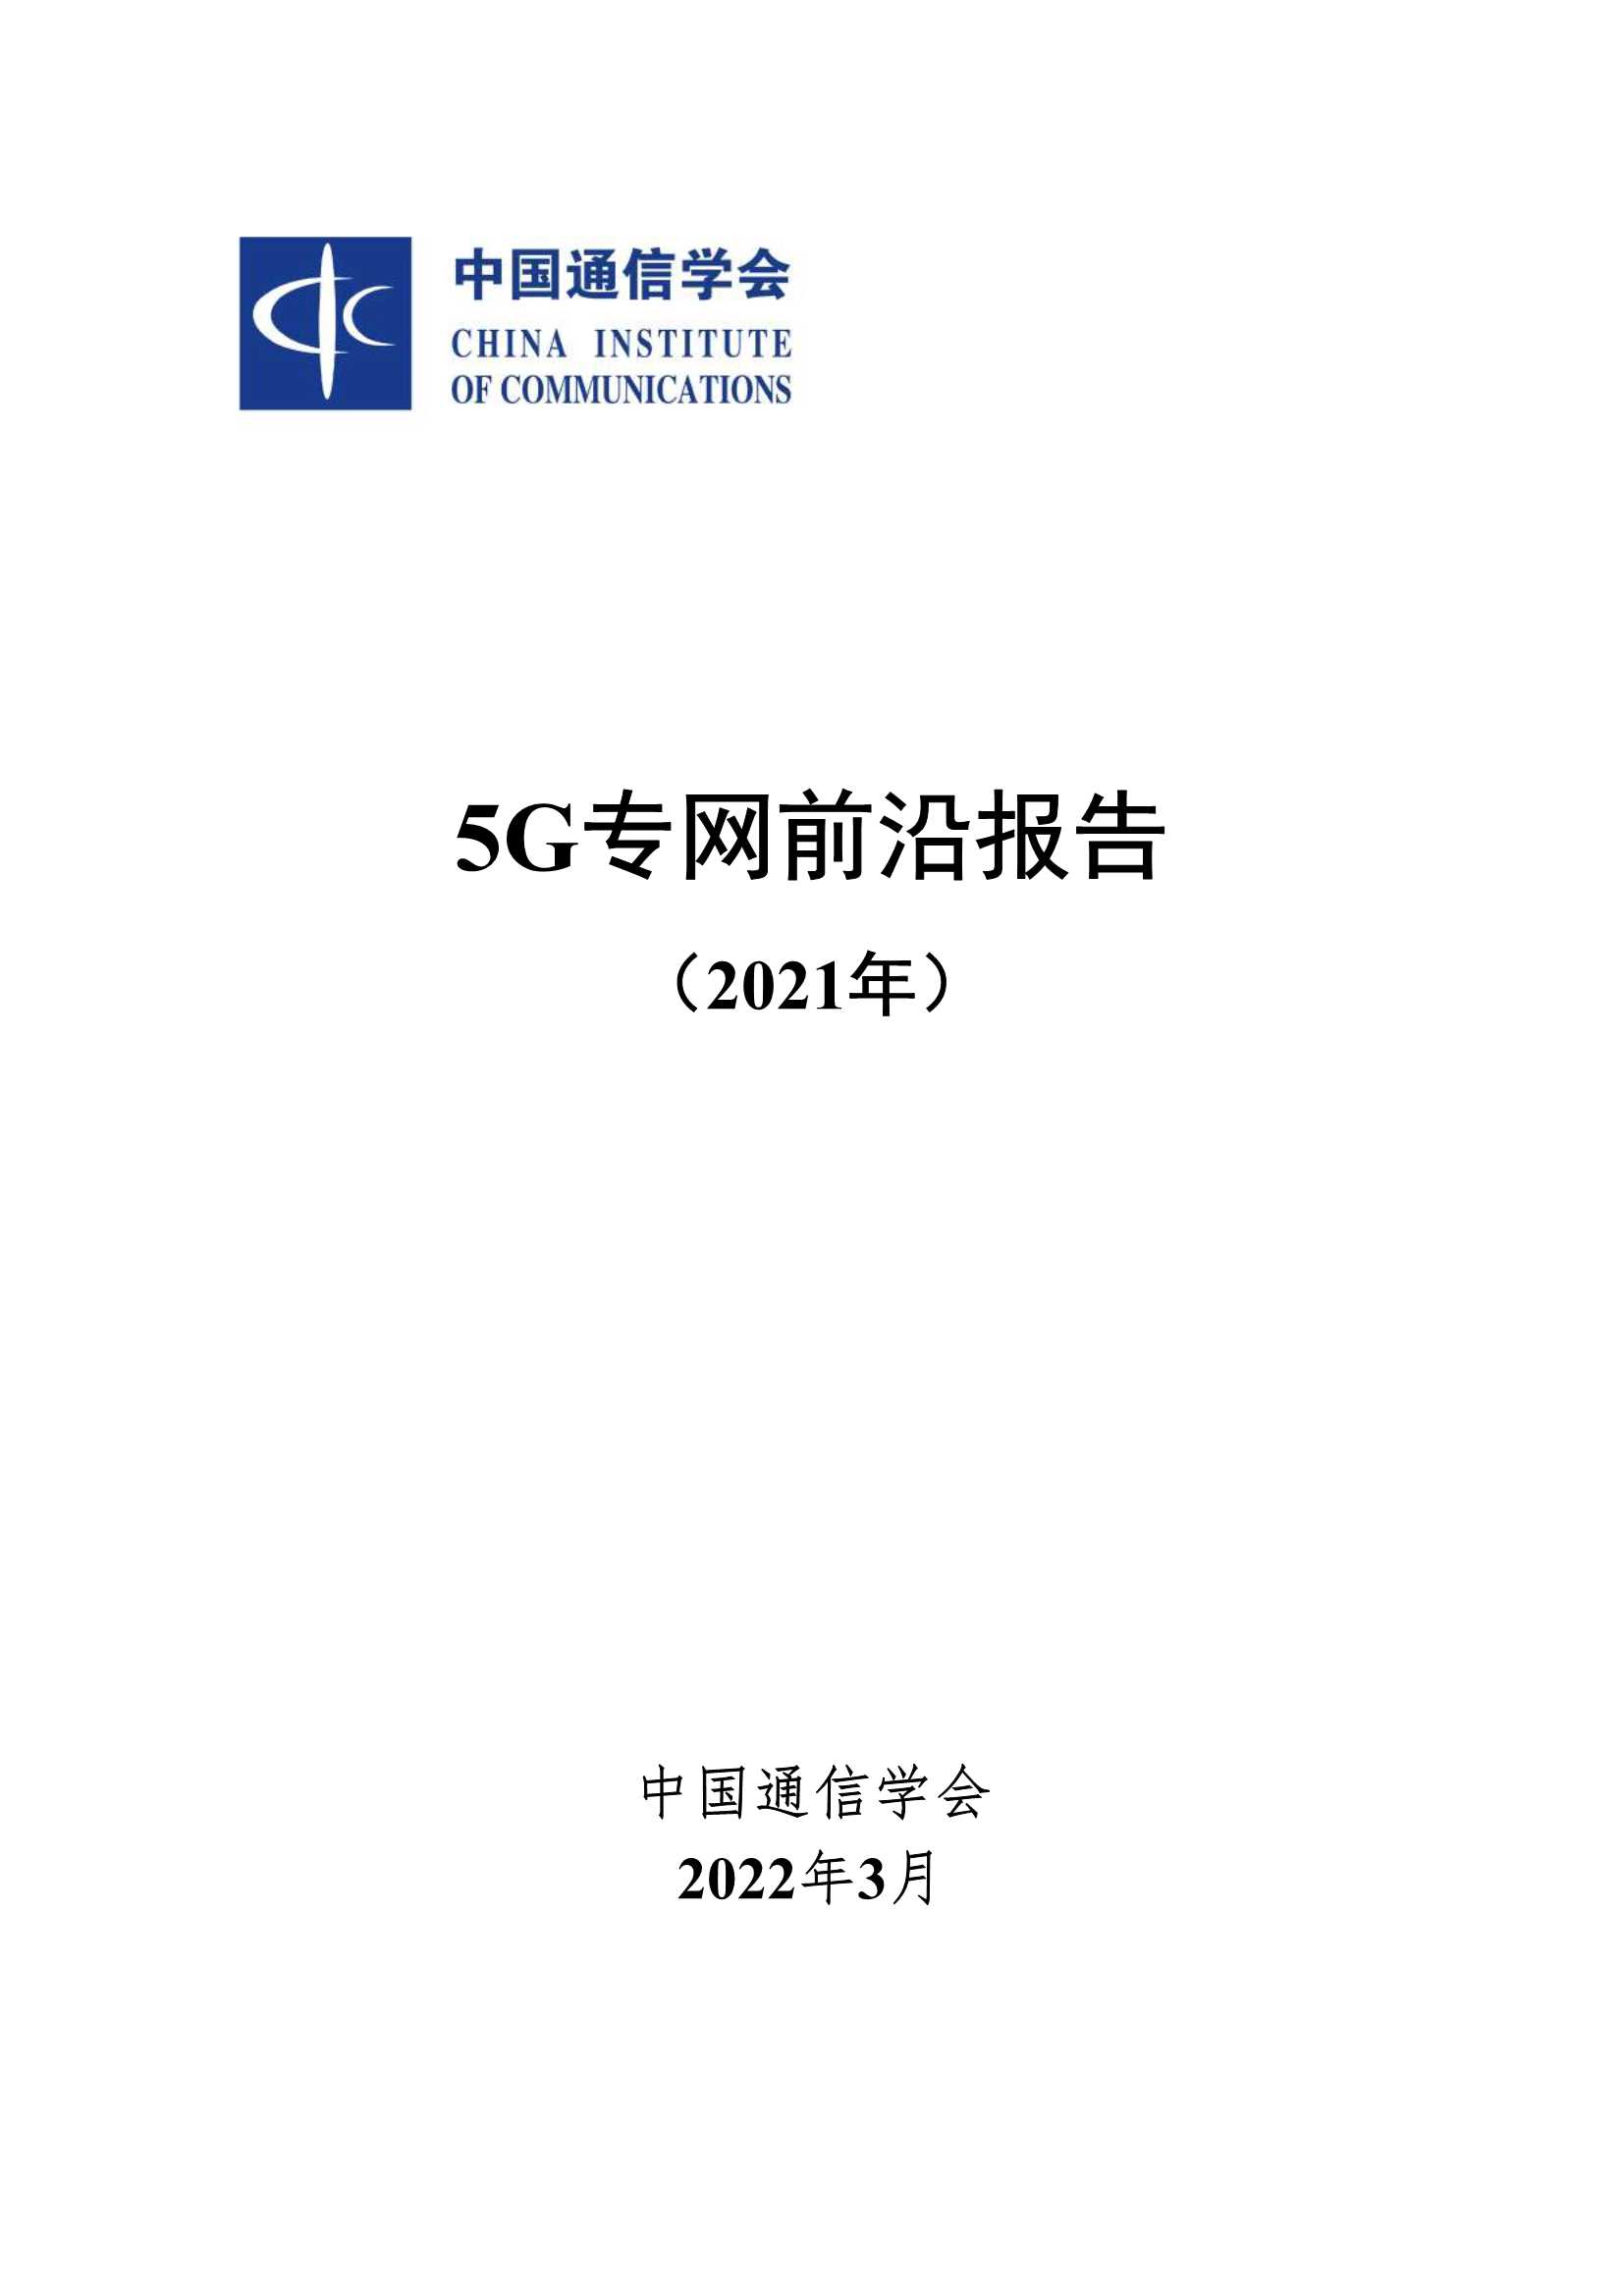 中国通信学会-5G专网前沿报告（2021年）-2022.04-26页